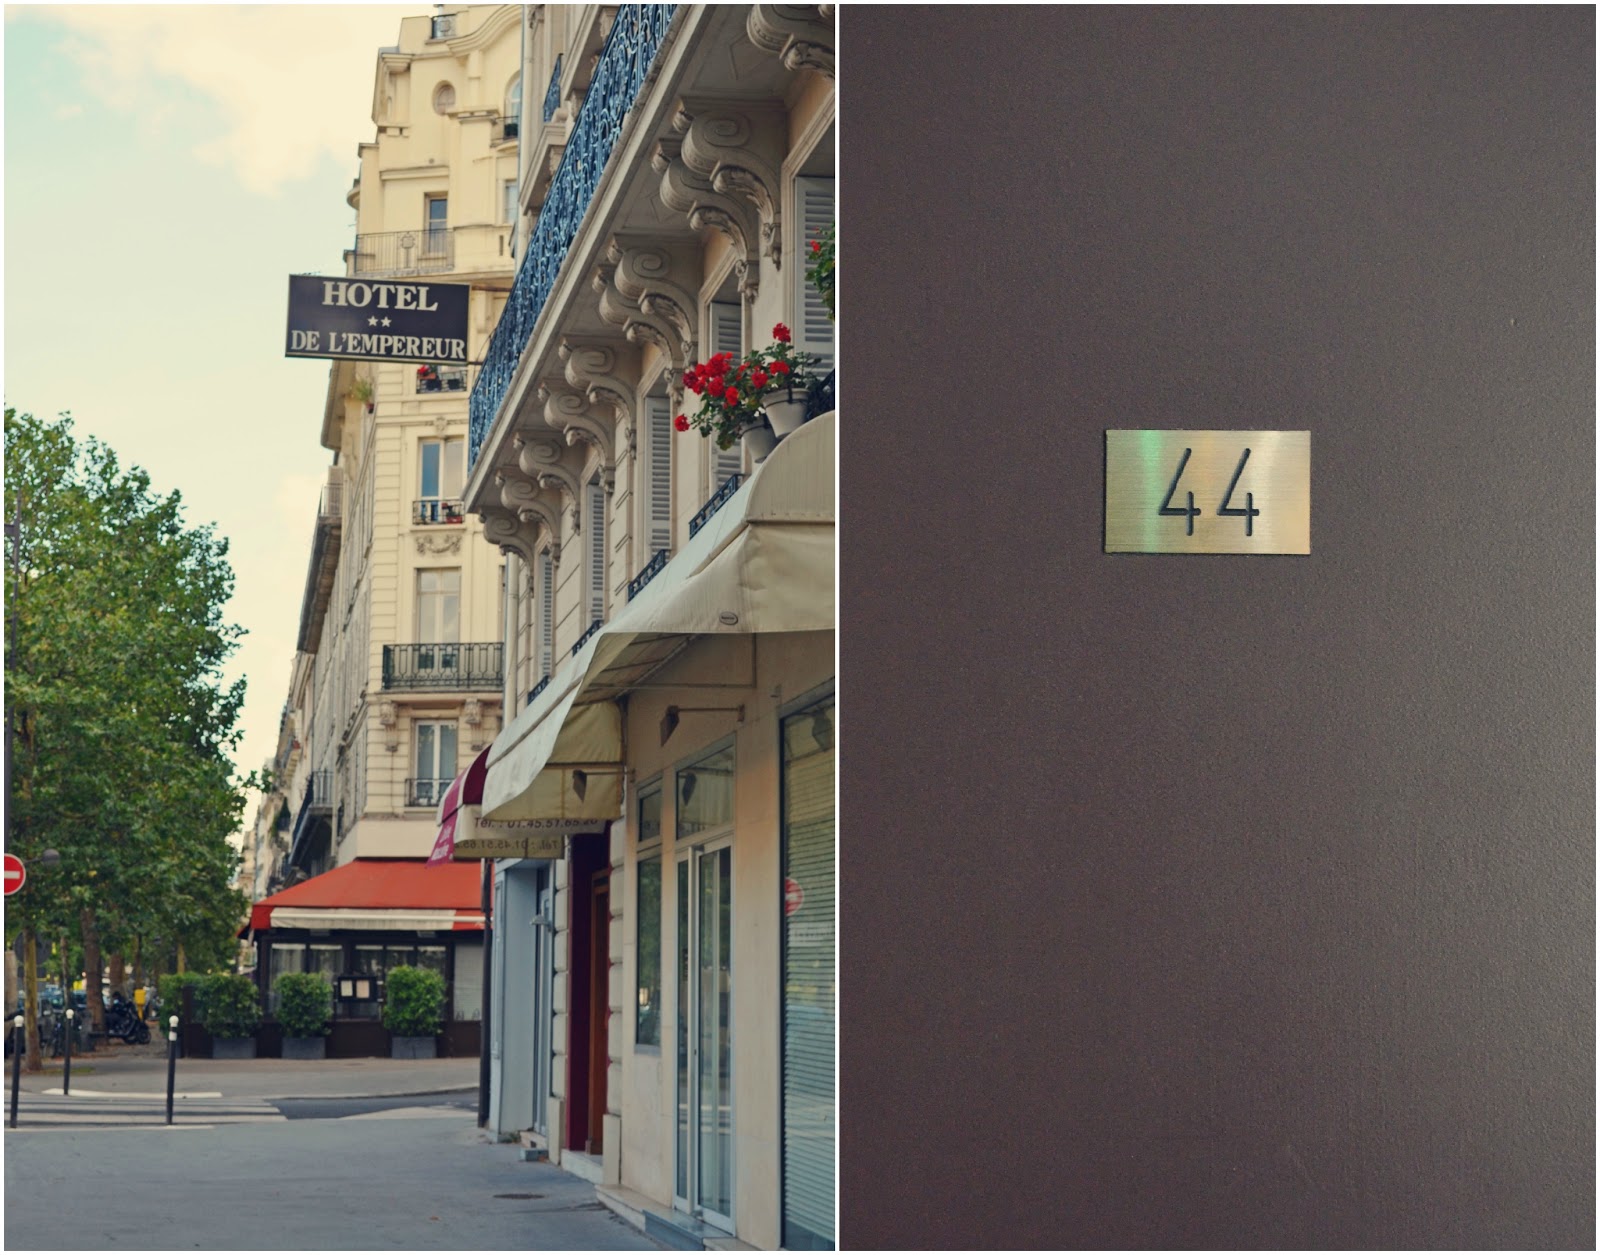 We Took the Road Less Traveled: J'adore Paris: Hotel de l'Empereur